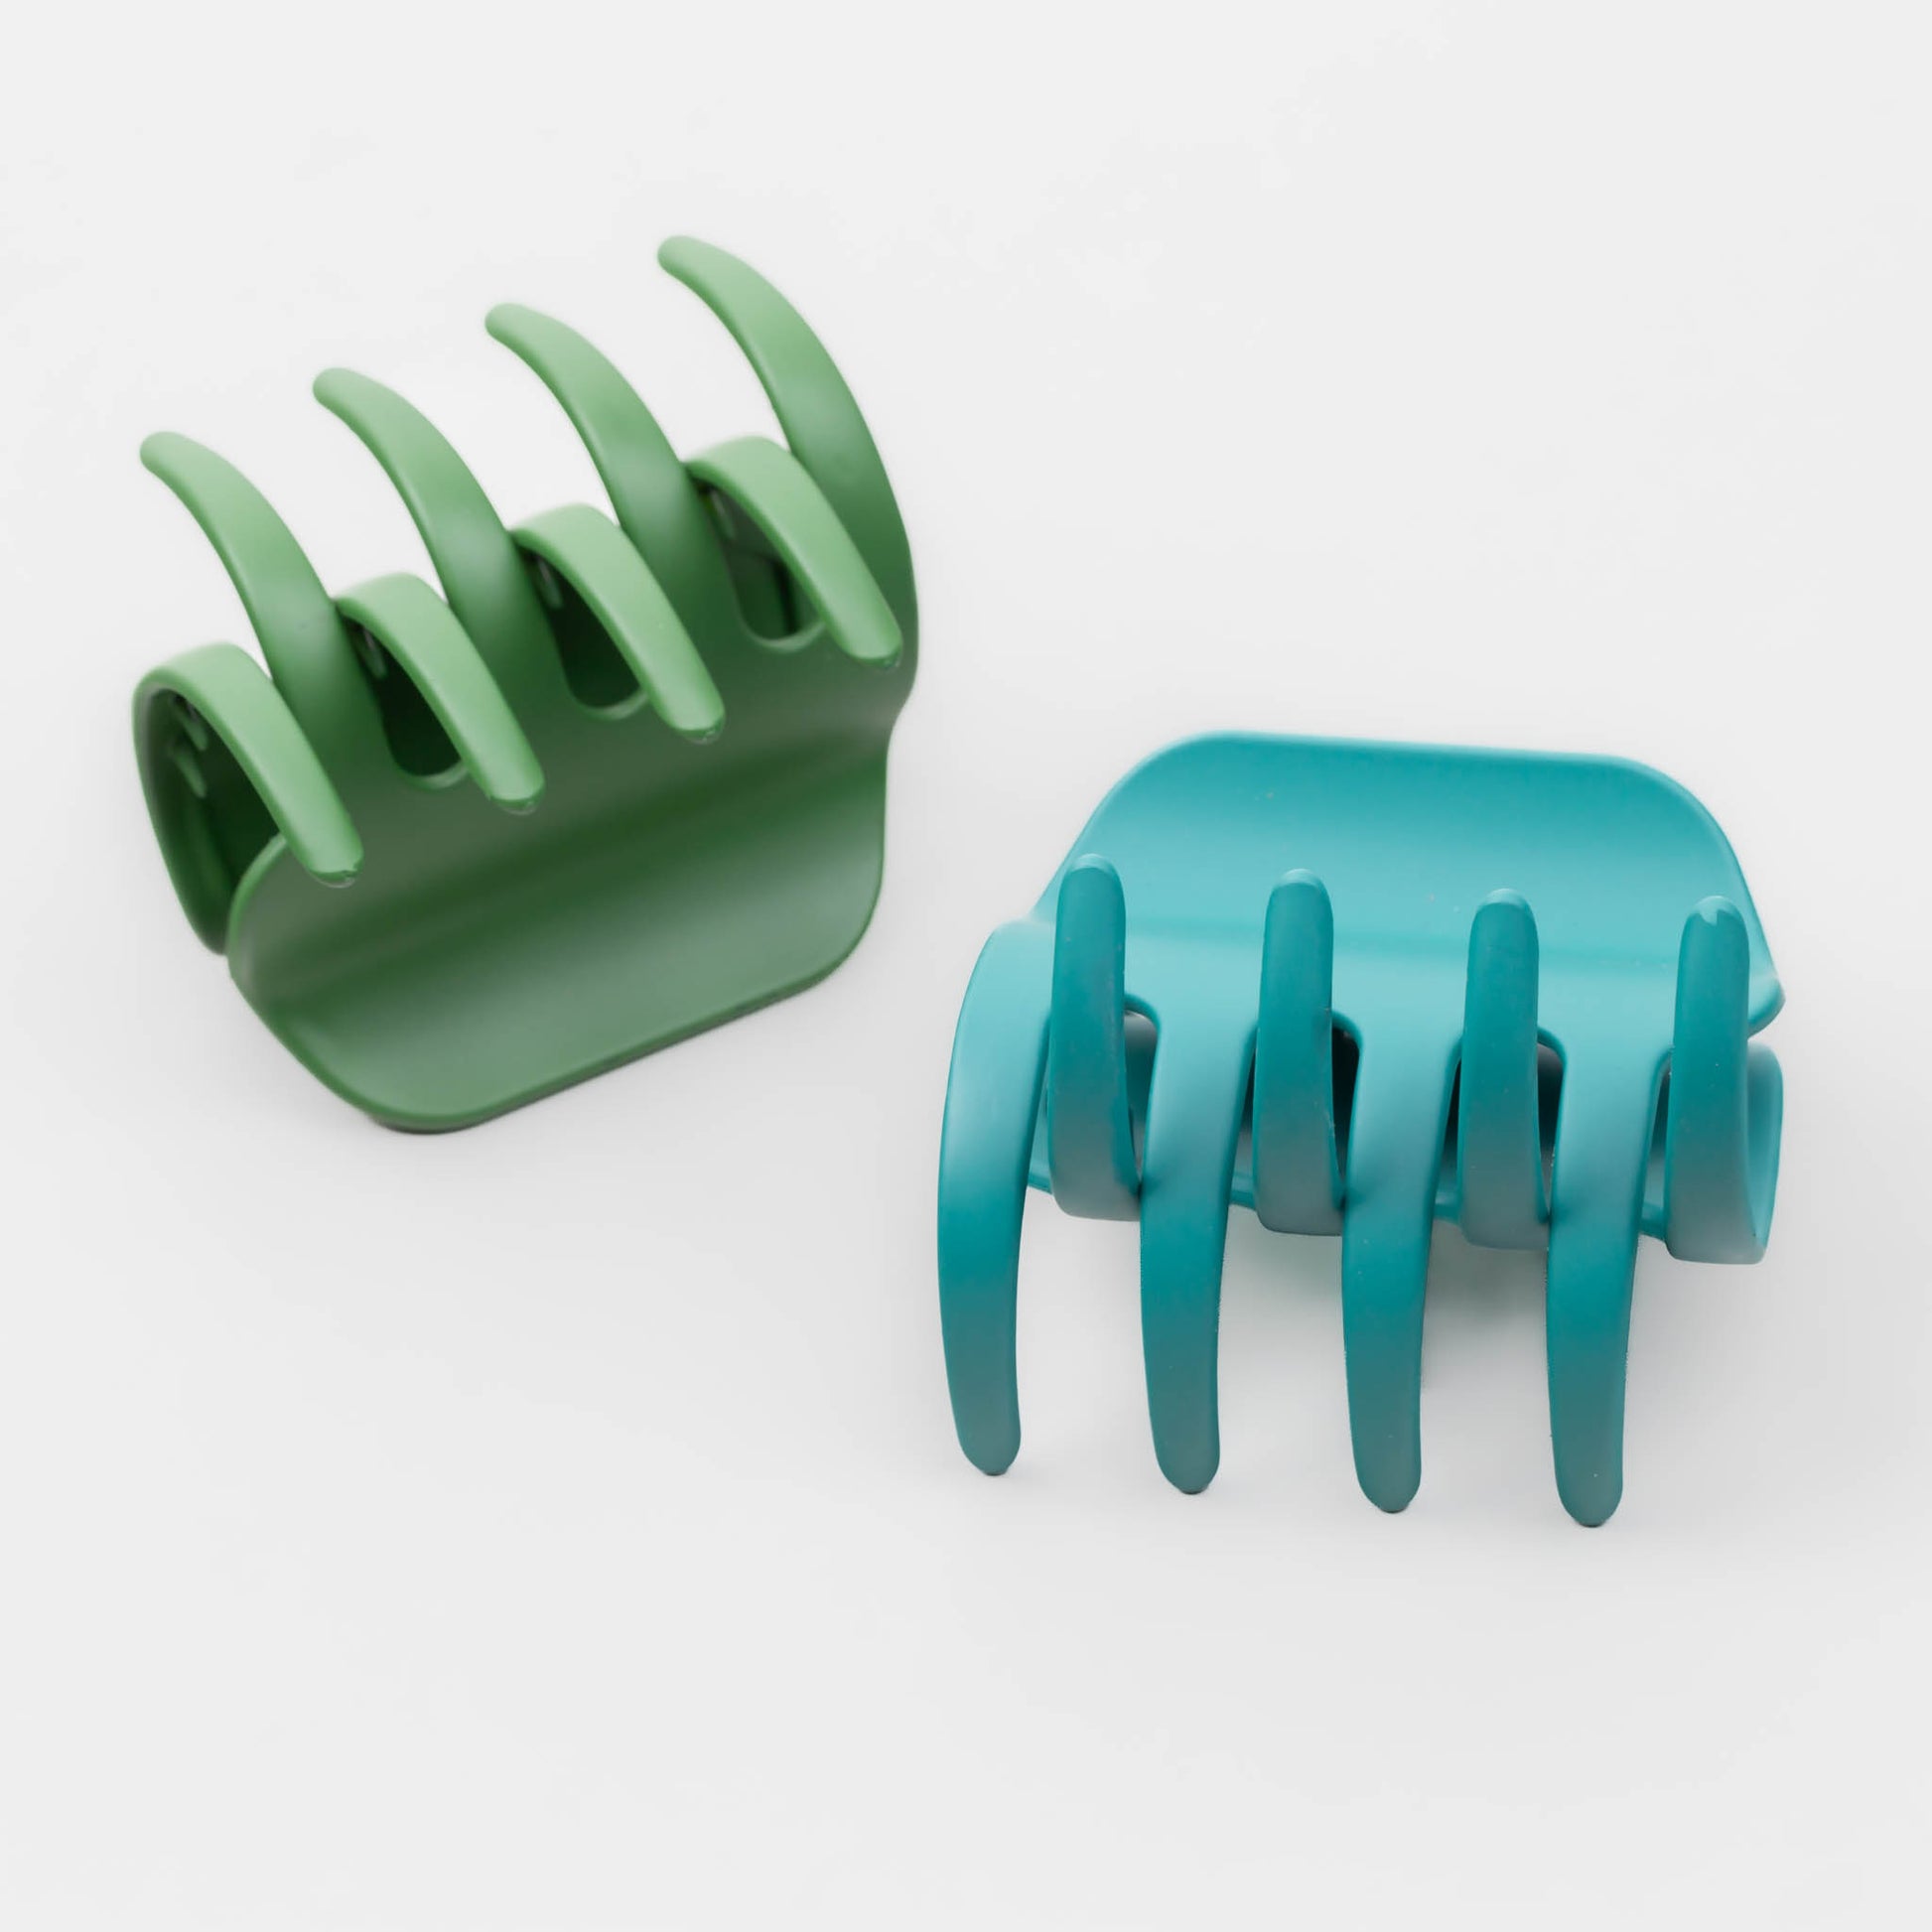 Clame de păr medii cu prindere largă și textură mată de silicon, set 2 buc - Verde Mix